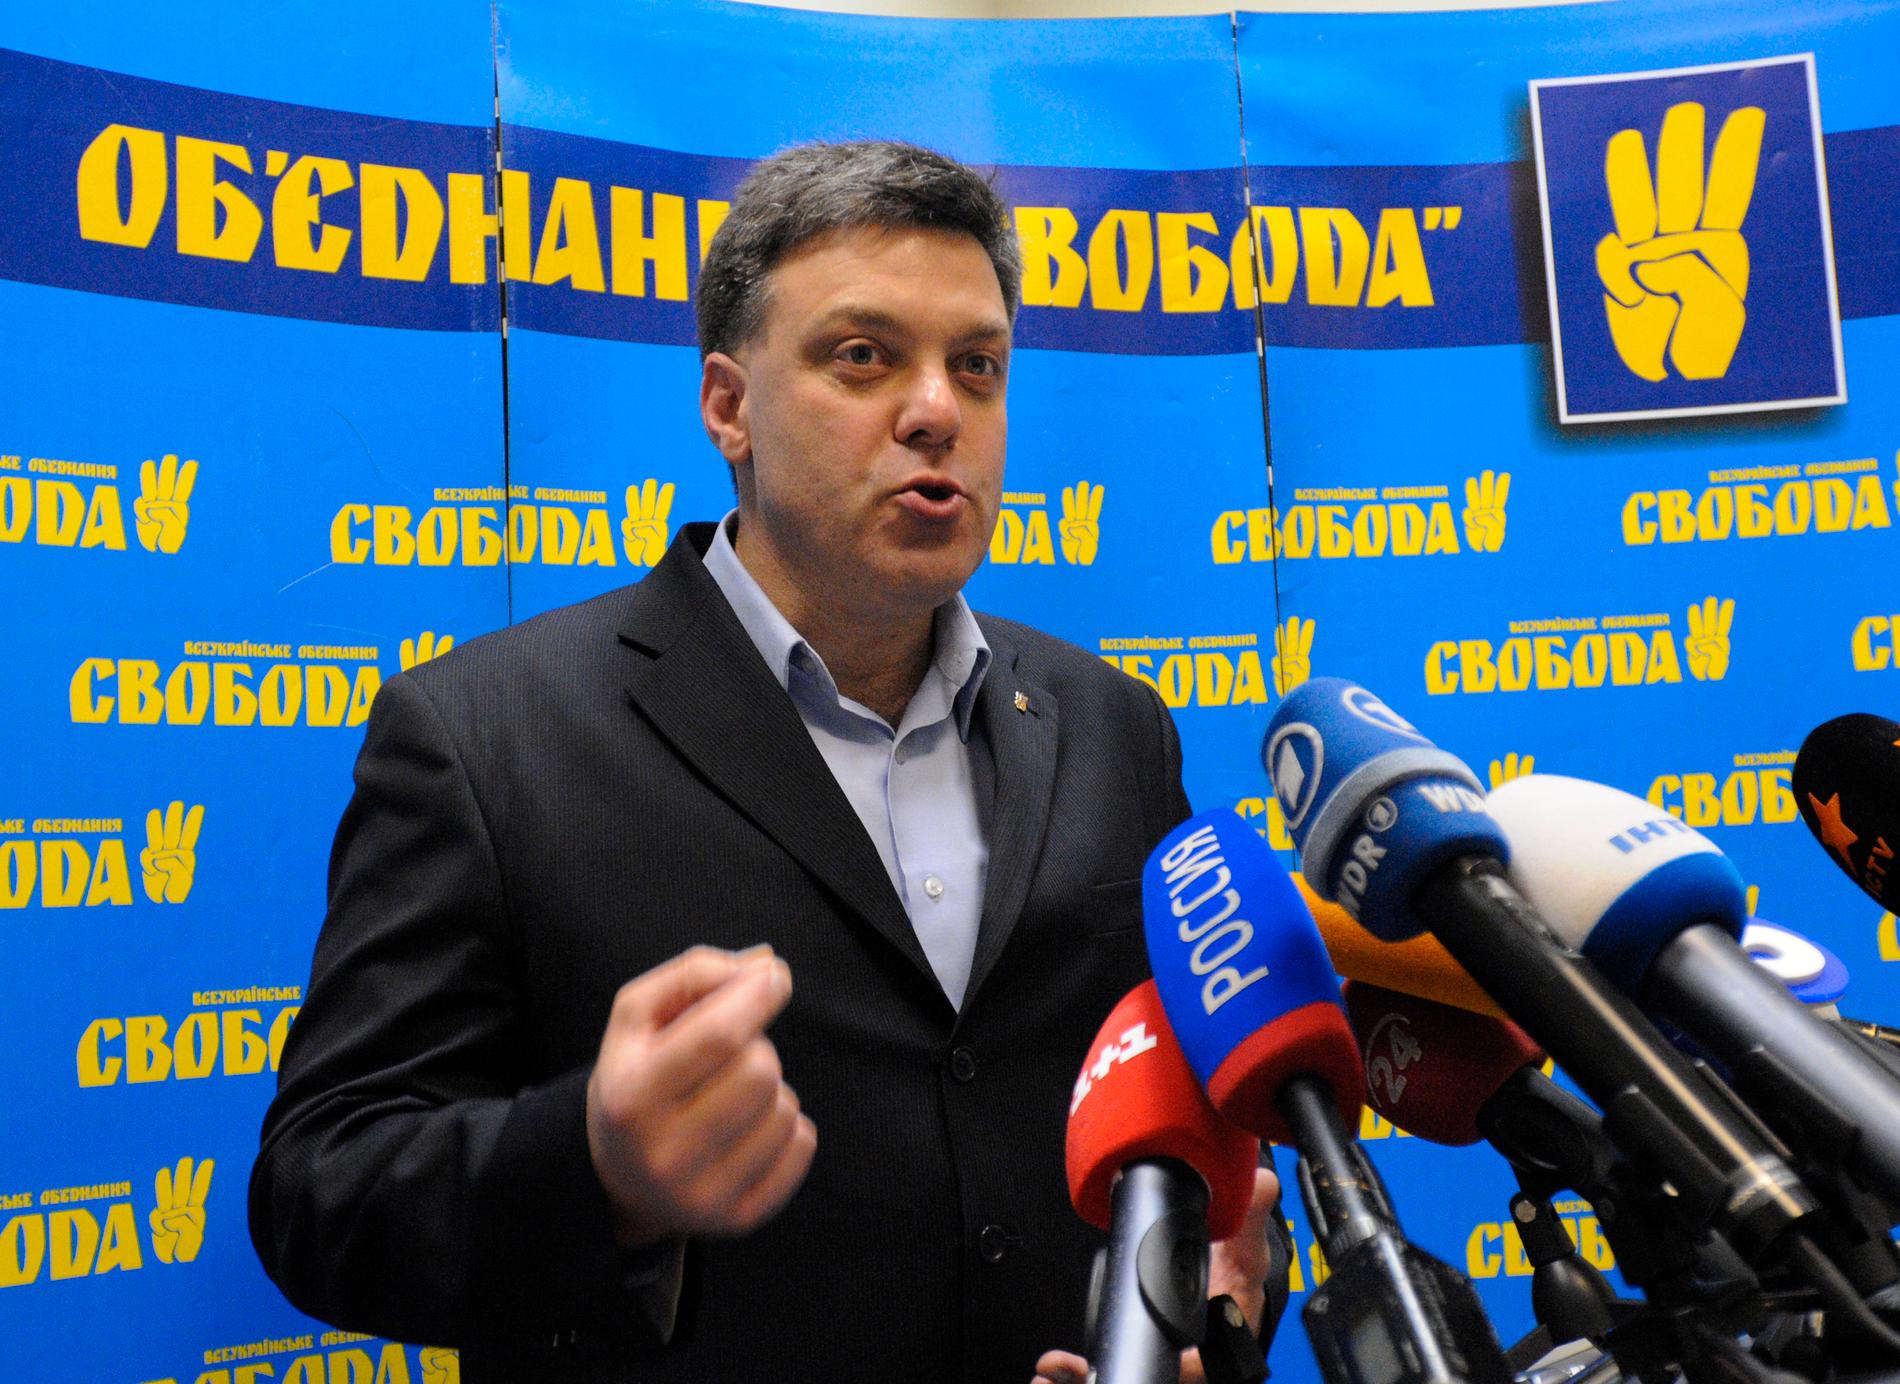 Oleh Tyahnybok, ledare för nationalistiska Svoboda. Fot: AP